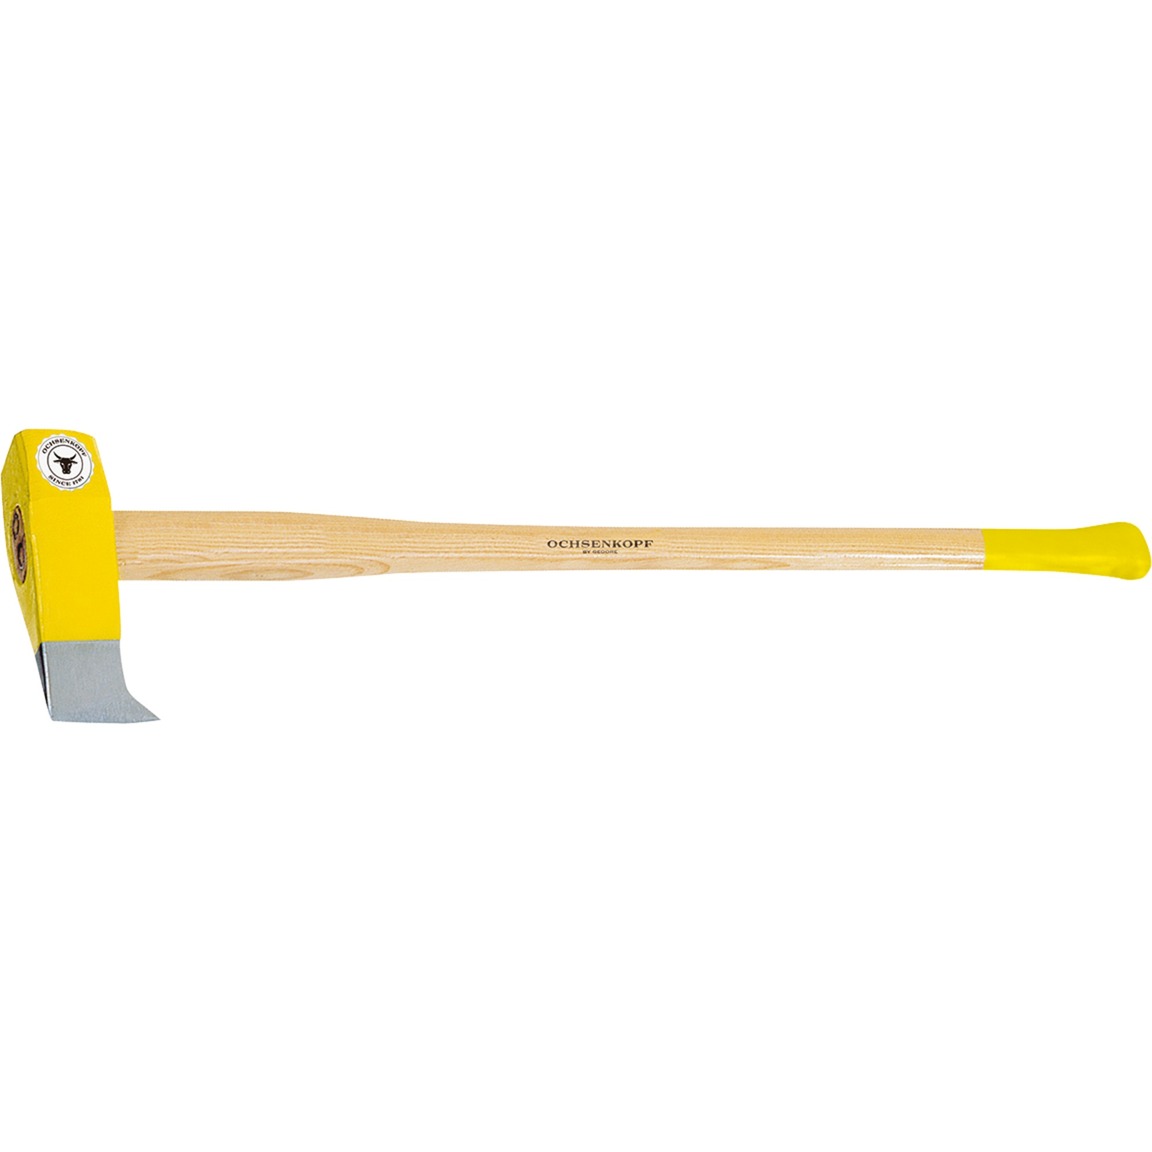 Image of Alternate - PROFI-Holzspalthammer OX 35 H-3009, Axt/Beil online einkaufen bei Alternate